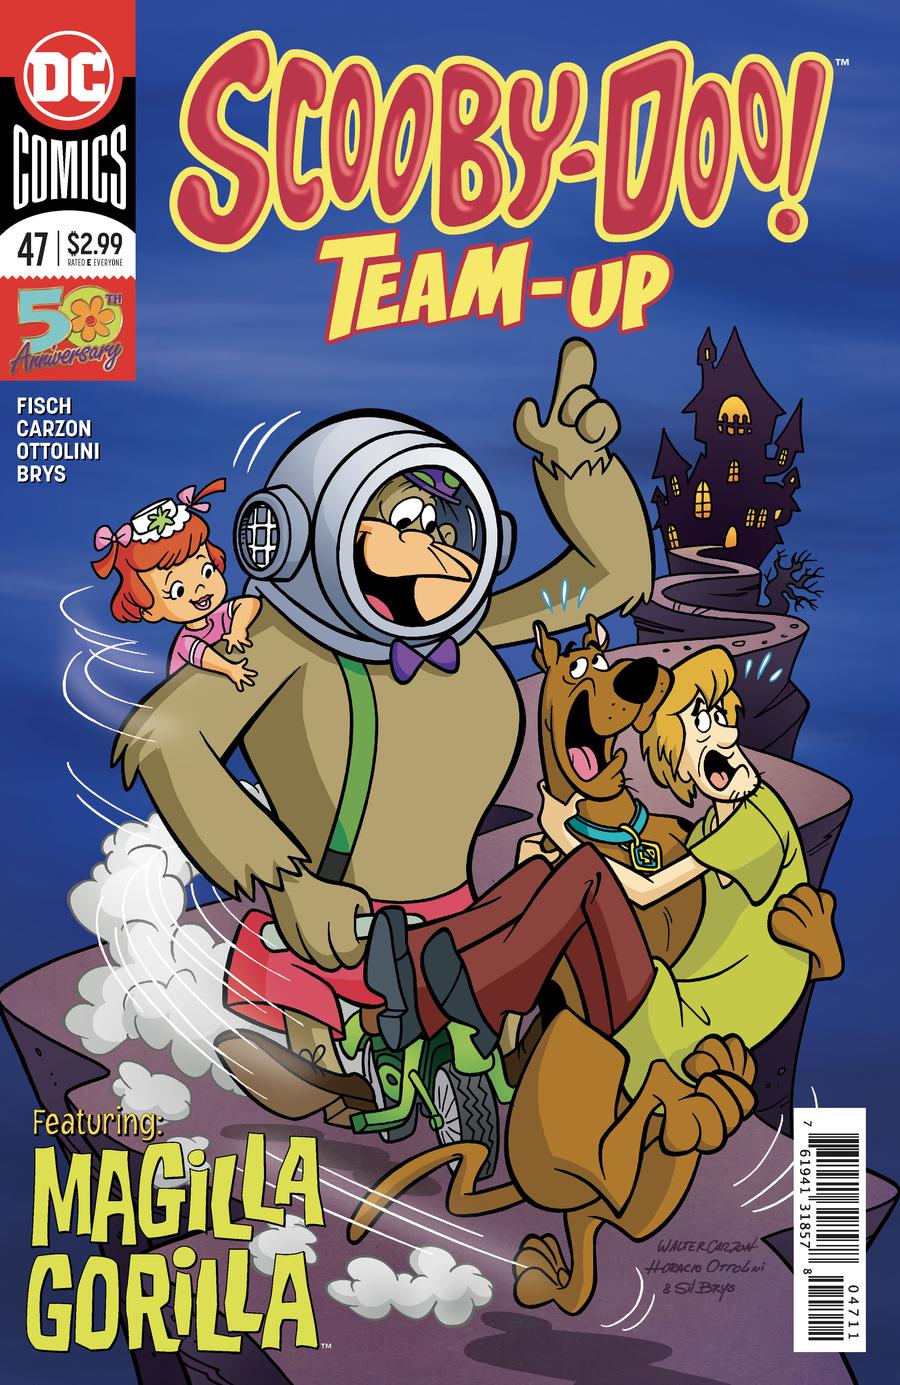 Scooby-Doo Team-Up #47